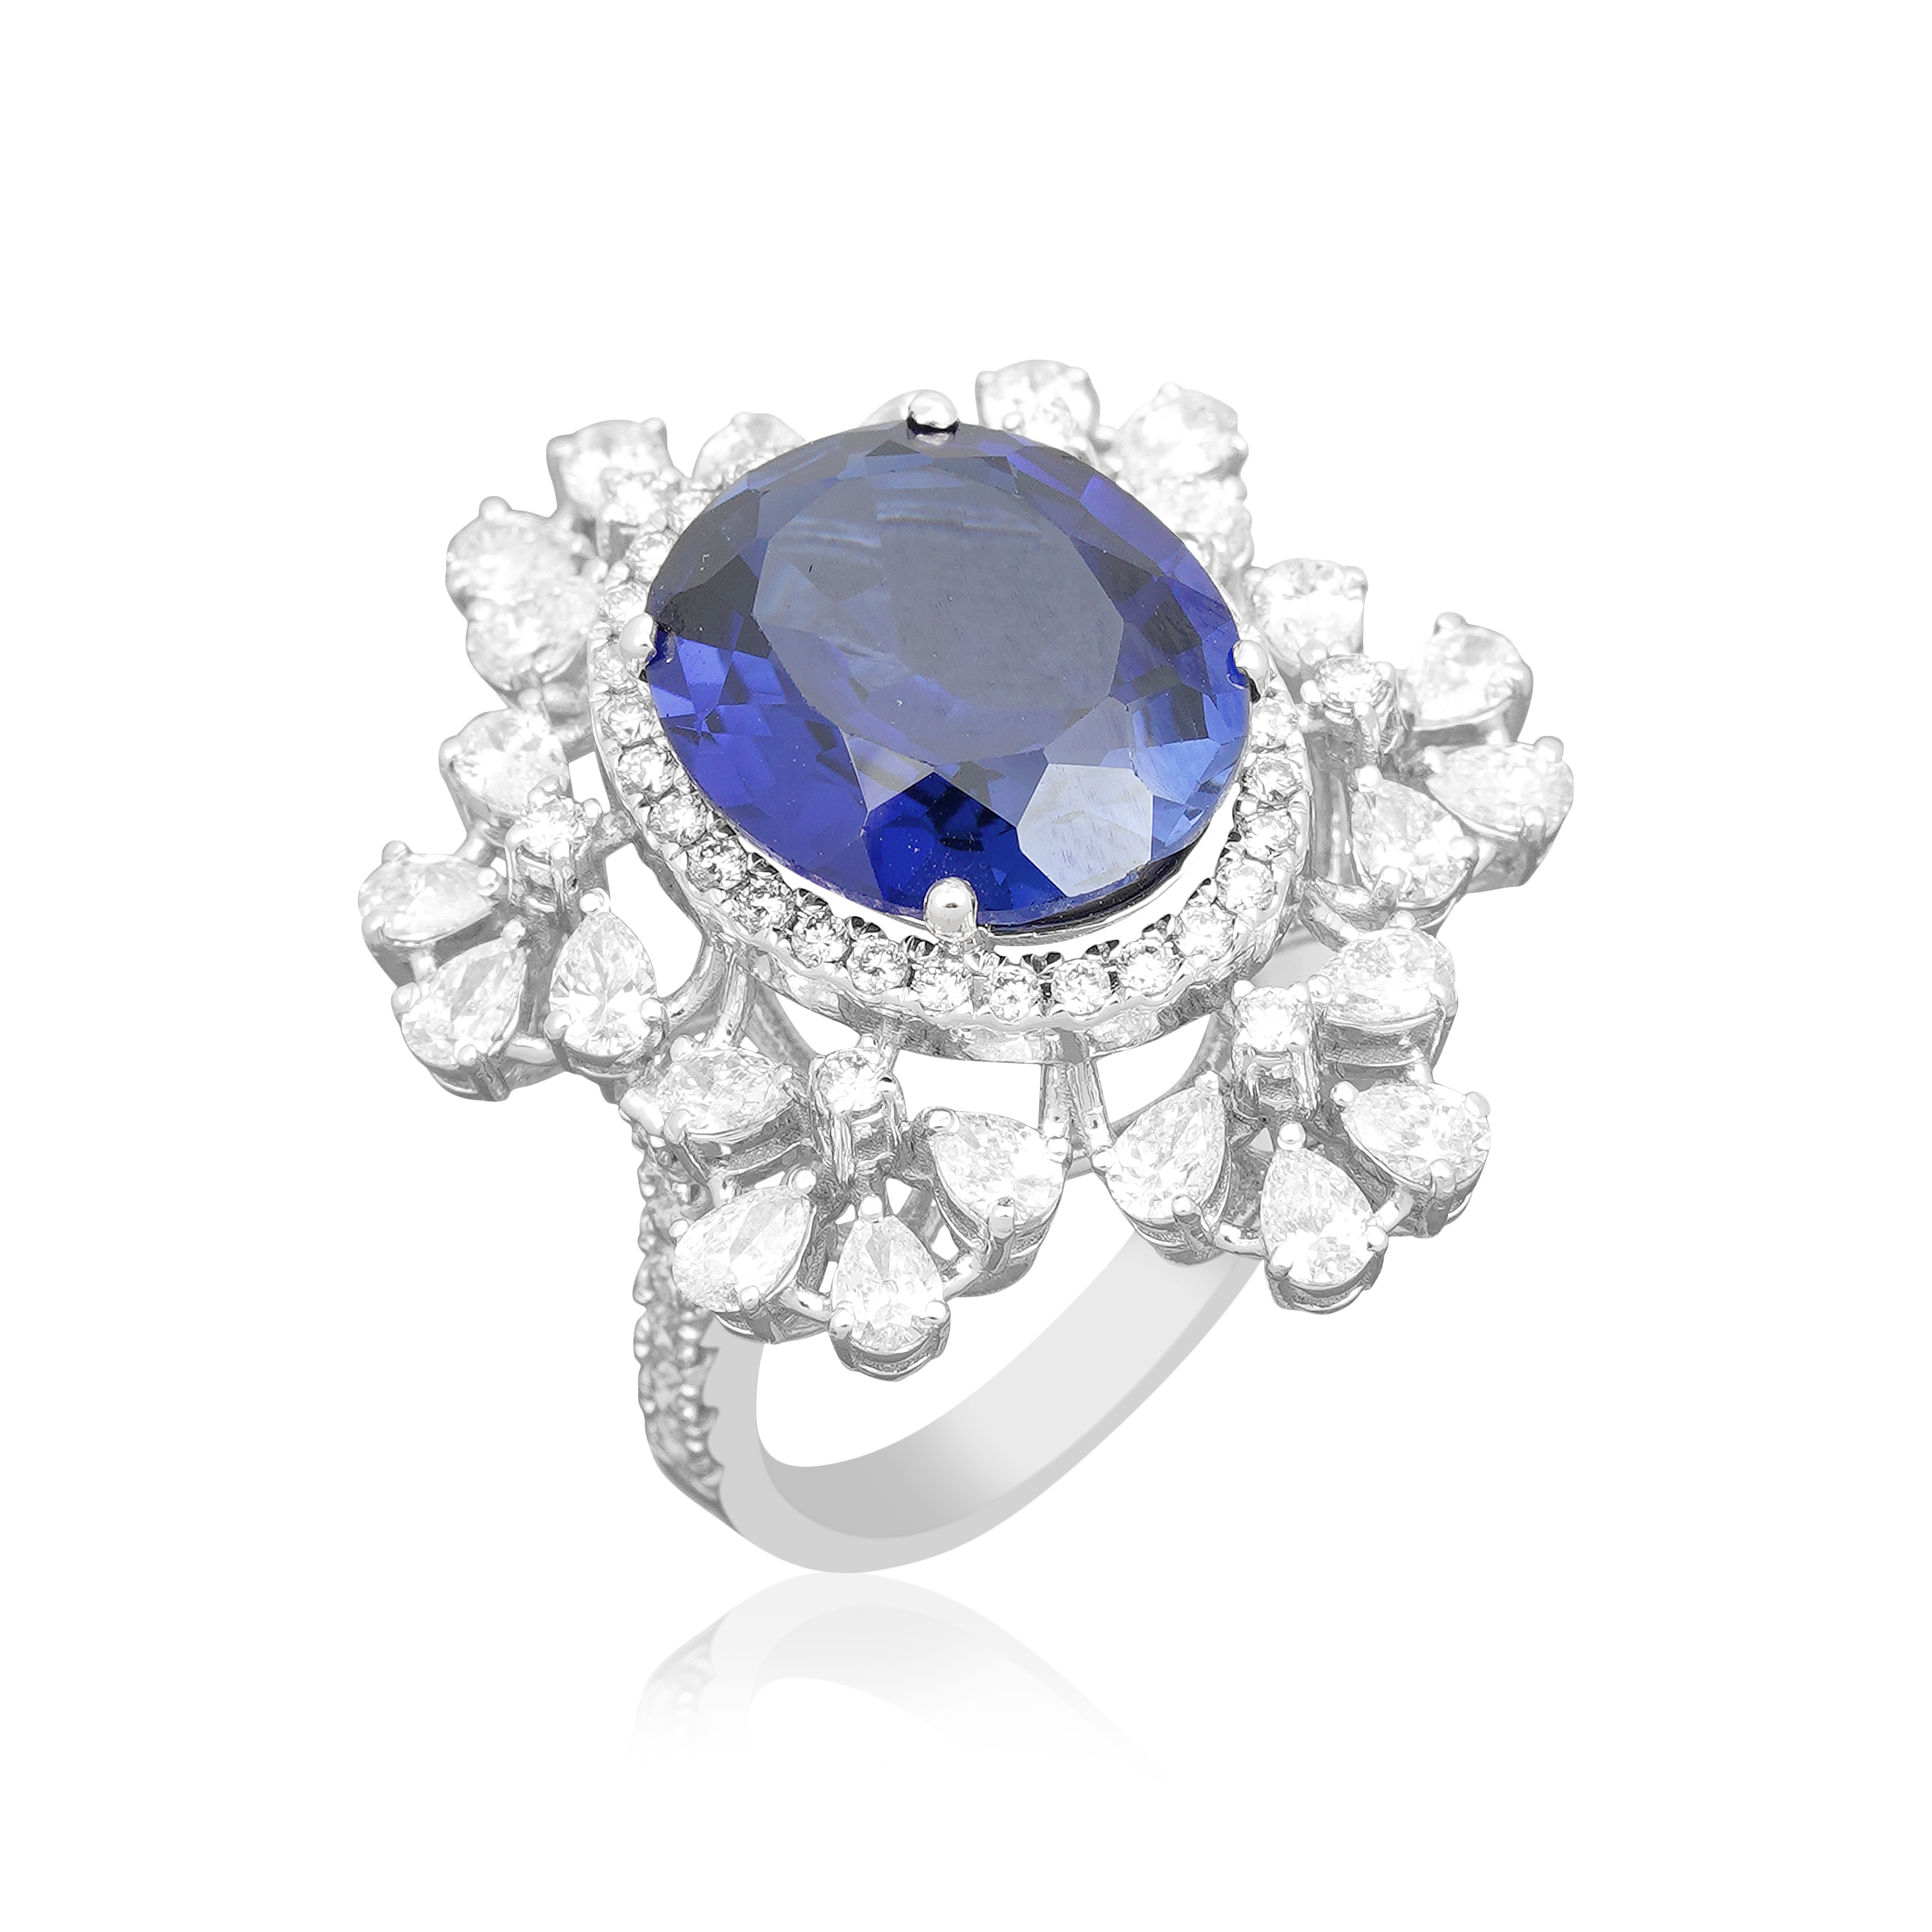 Magical blue sapphire